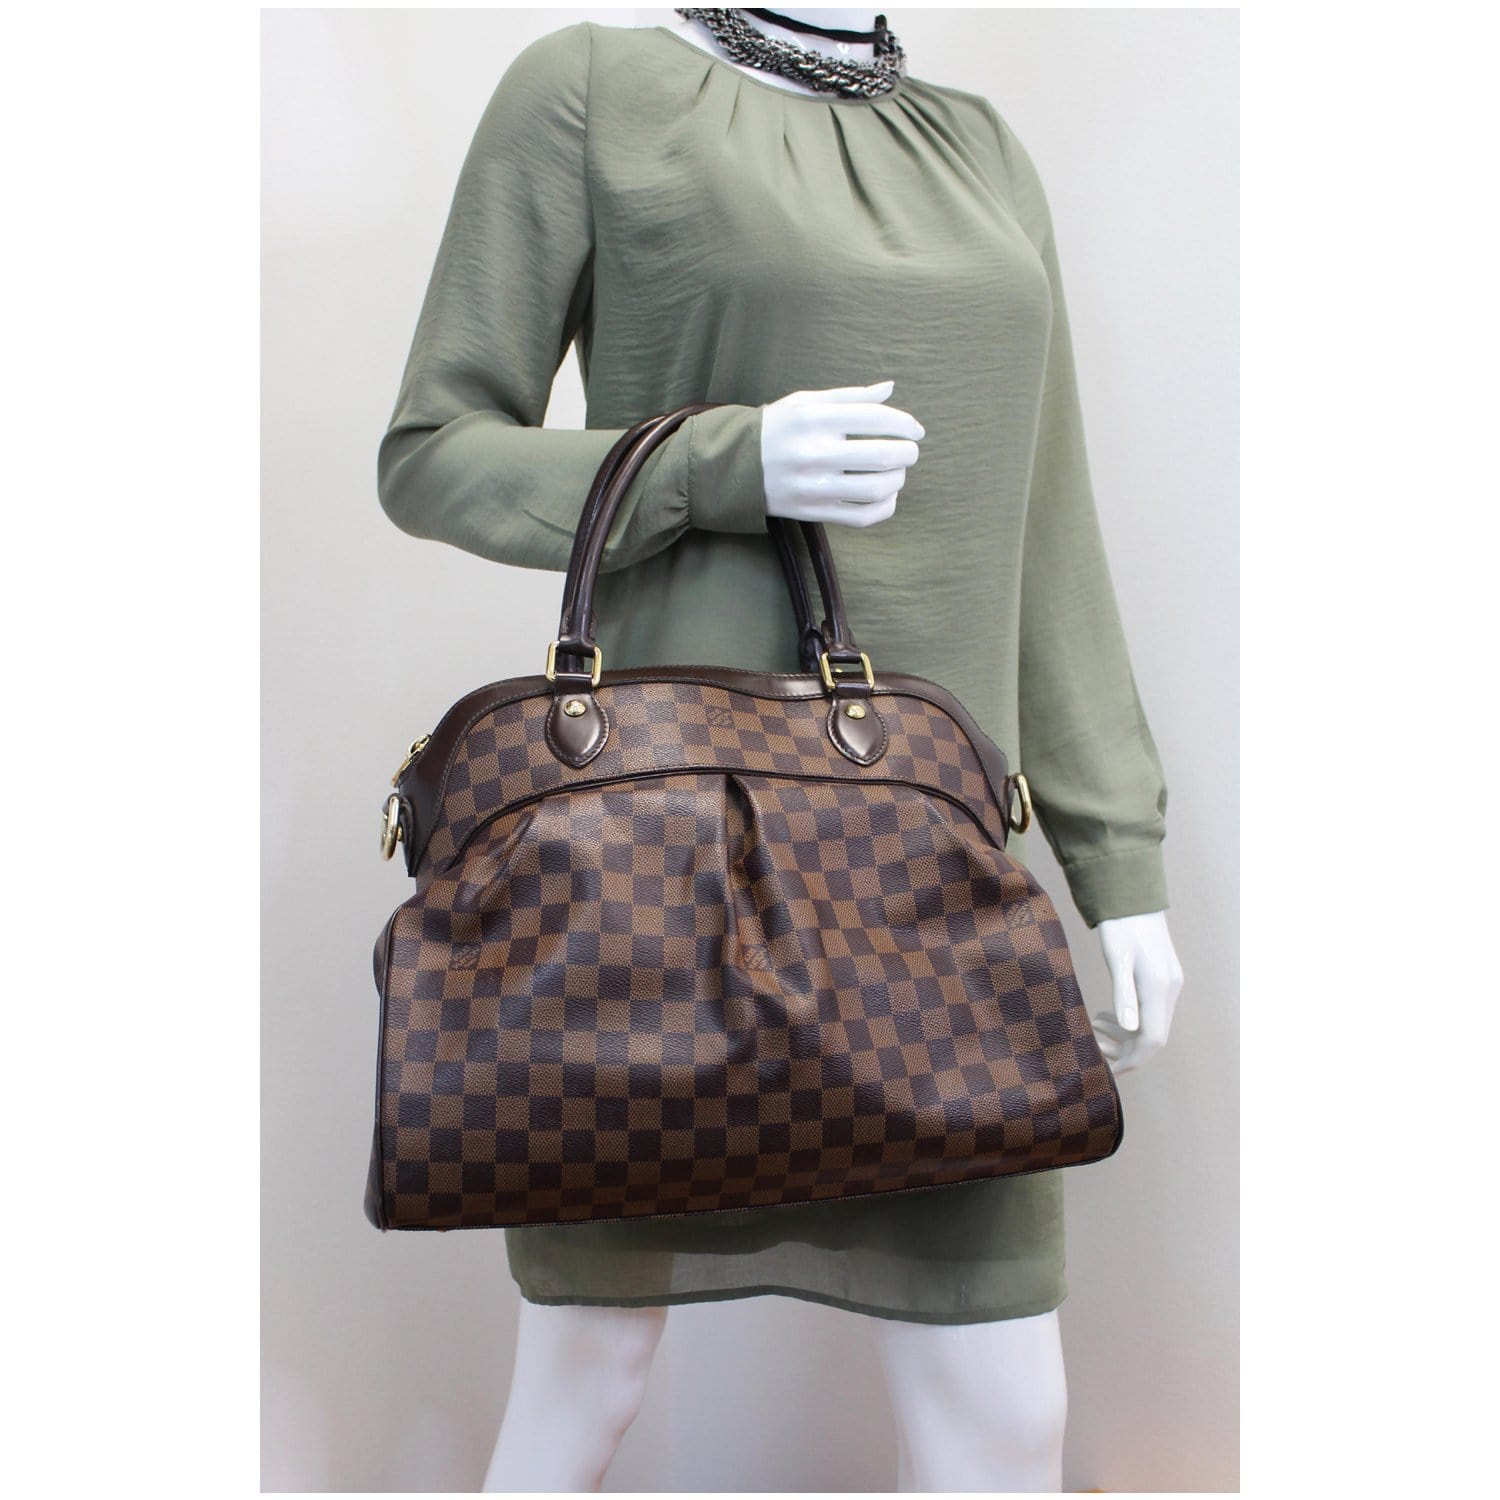 Authentic Louis Vuitton Trevi GM Damier Ebene 2 Way Handbag Shoulder Strap